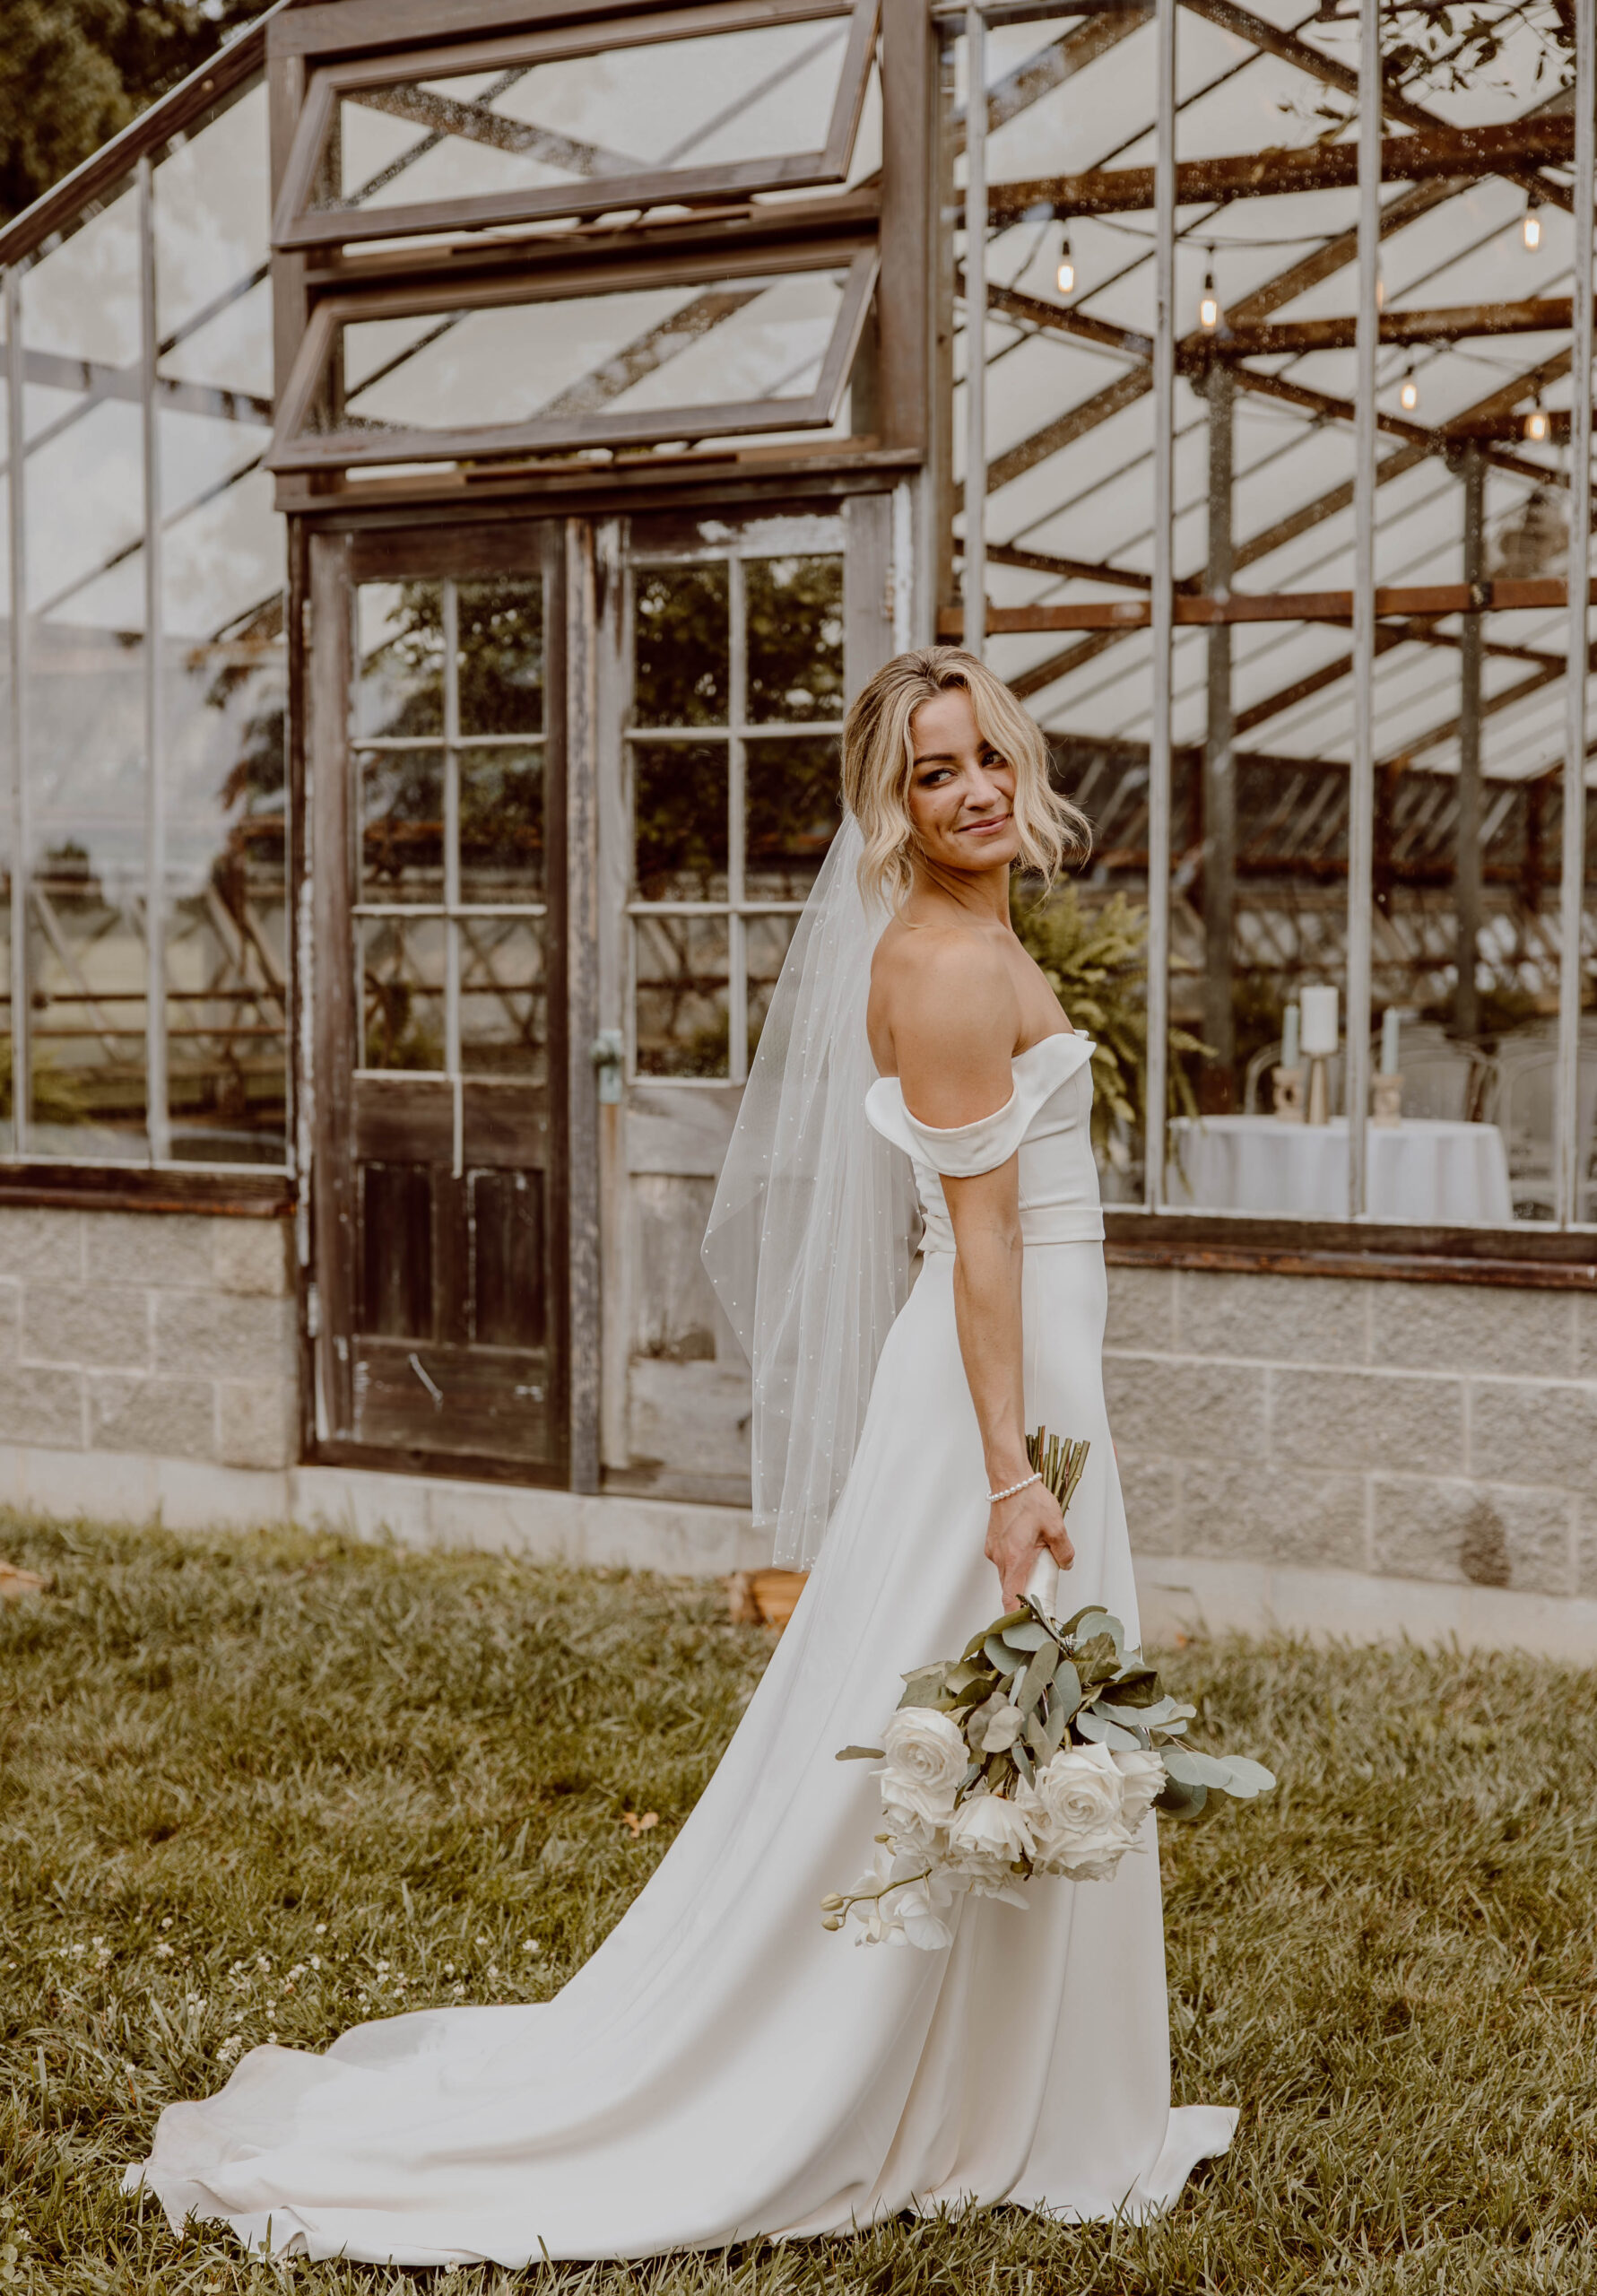 Jorgensen Farms Wedding, Westerville Ohio, Columbus Wedding Venues, Jorgensen Farms Wedding, Columbus Wedding Photographer, Ohio Wedding Photographer